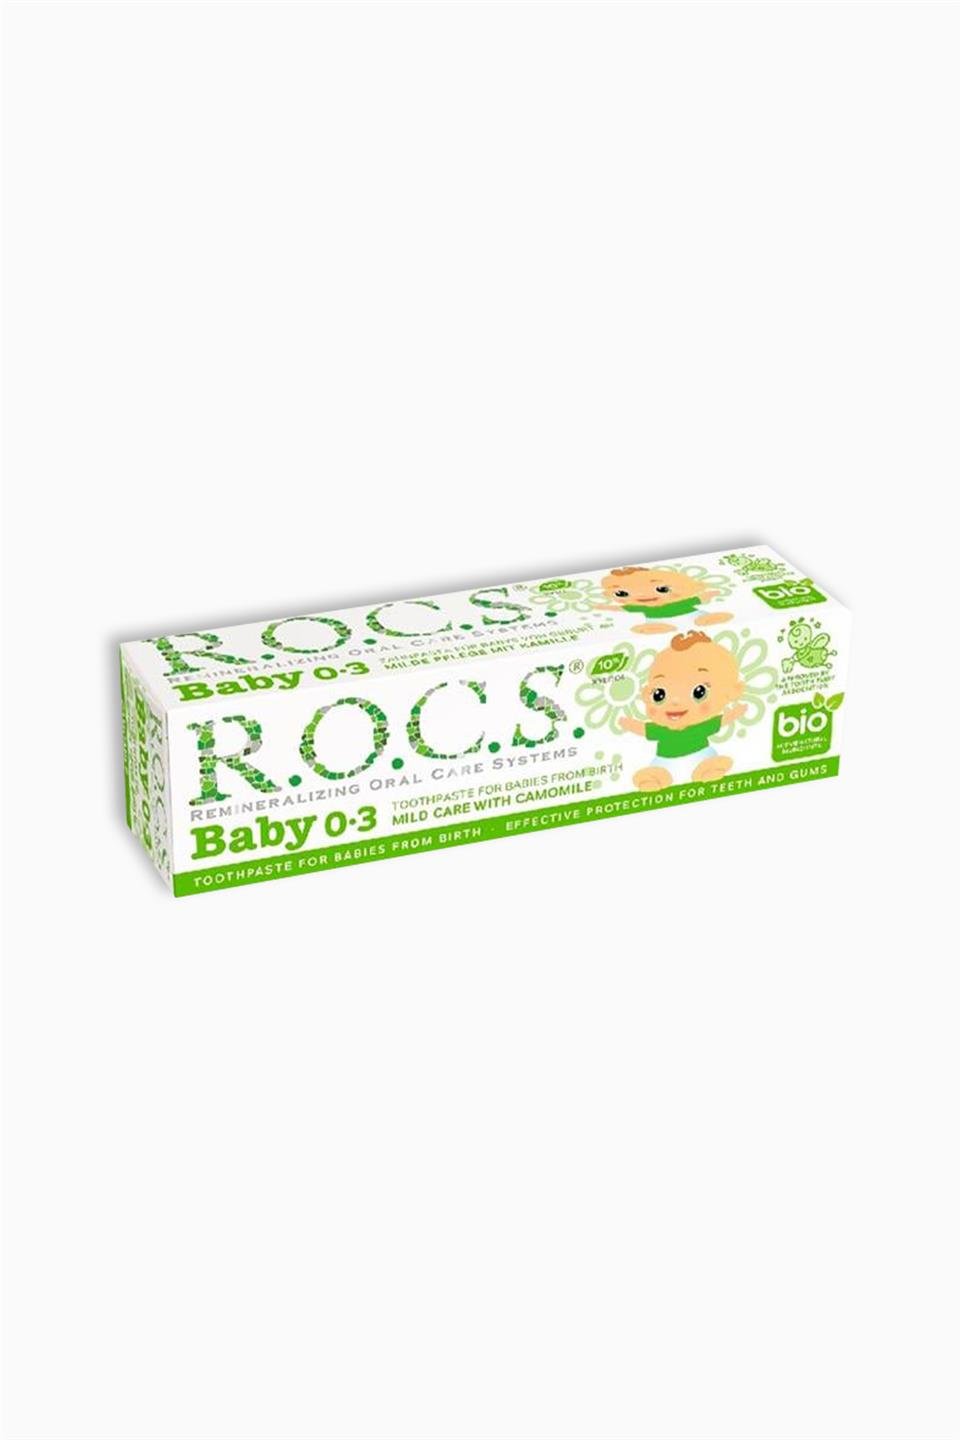 Rocs Baby Papatya Özlü Yutulabilir Diş Macunu 0-3 Yaş 35 ml